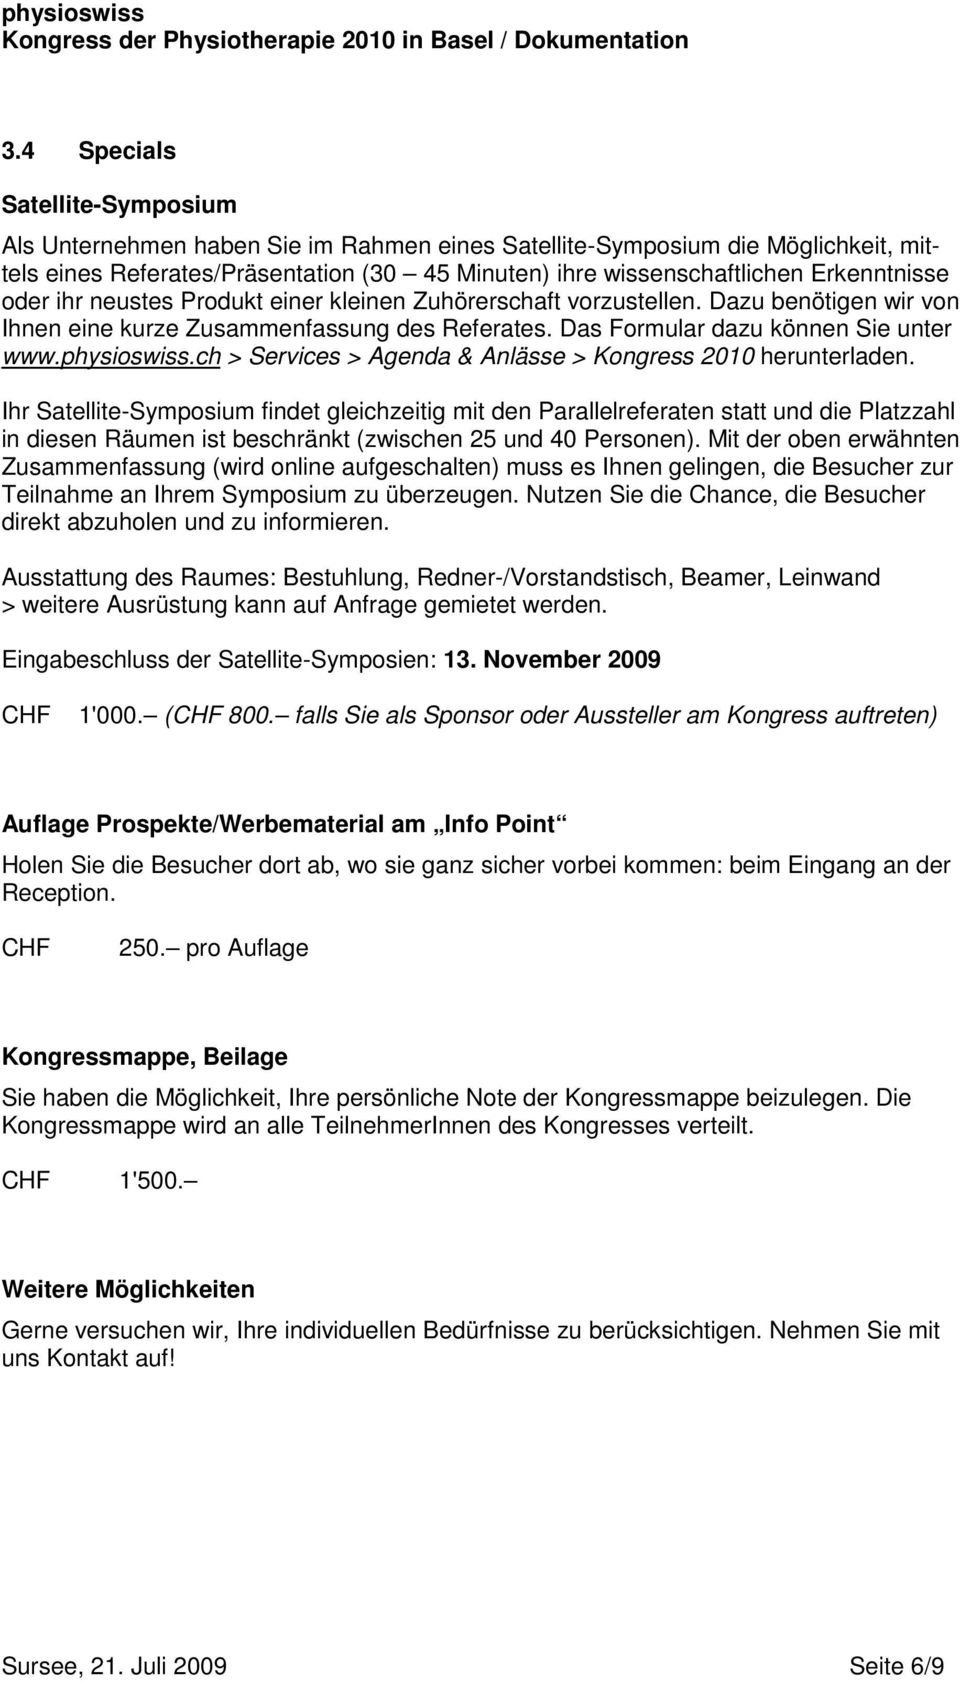 physioswiss.ch > Services > Agenda & Anlässe > Kongress 2010 herunterladen.